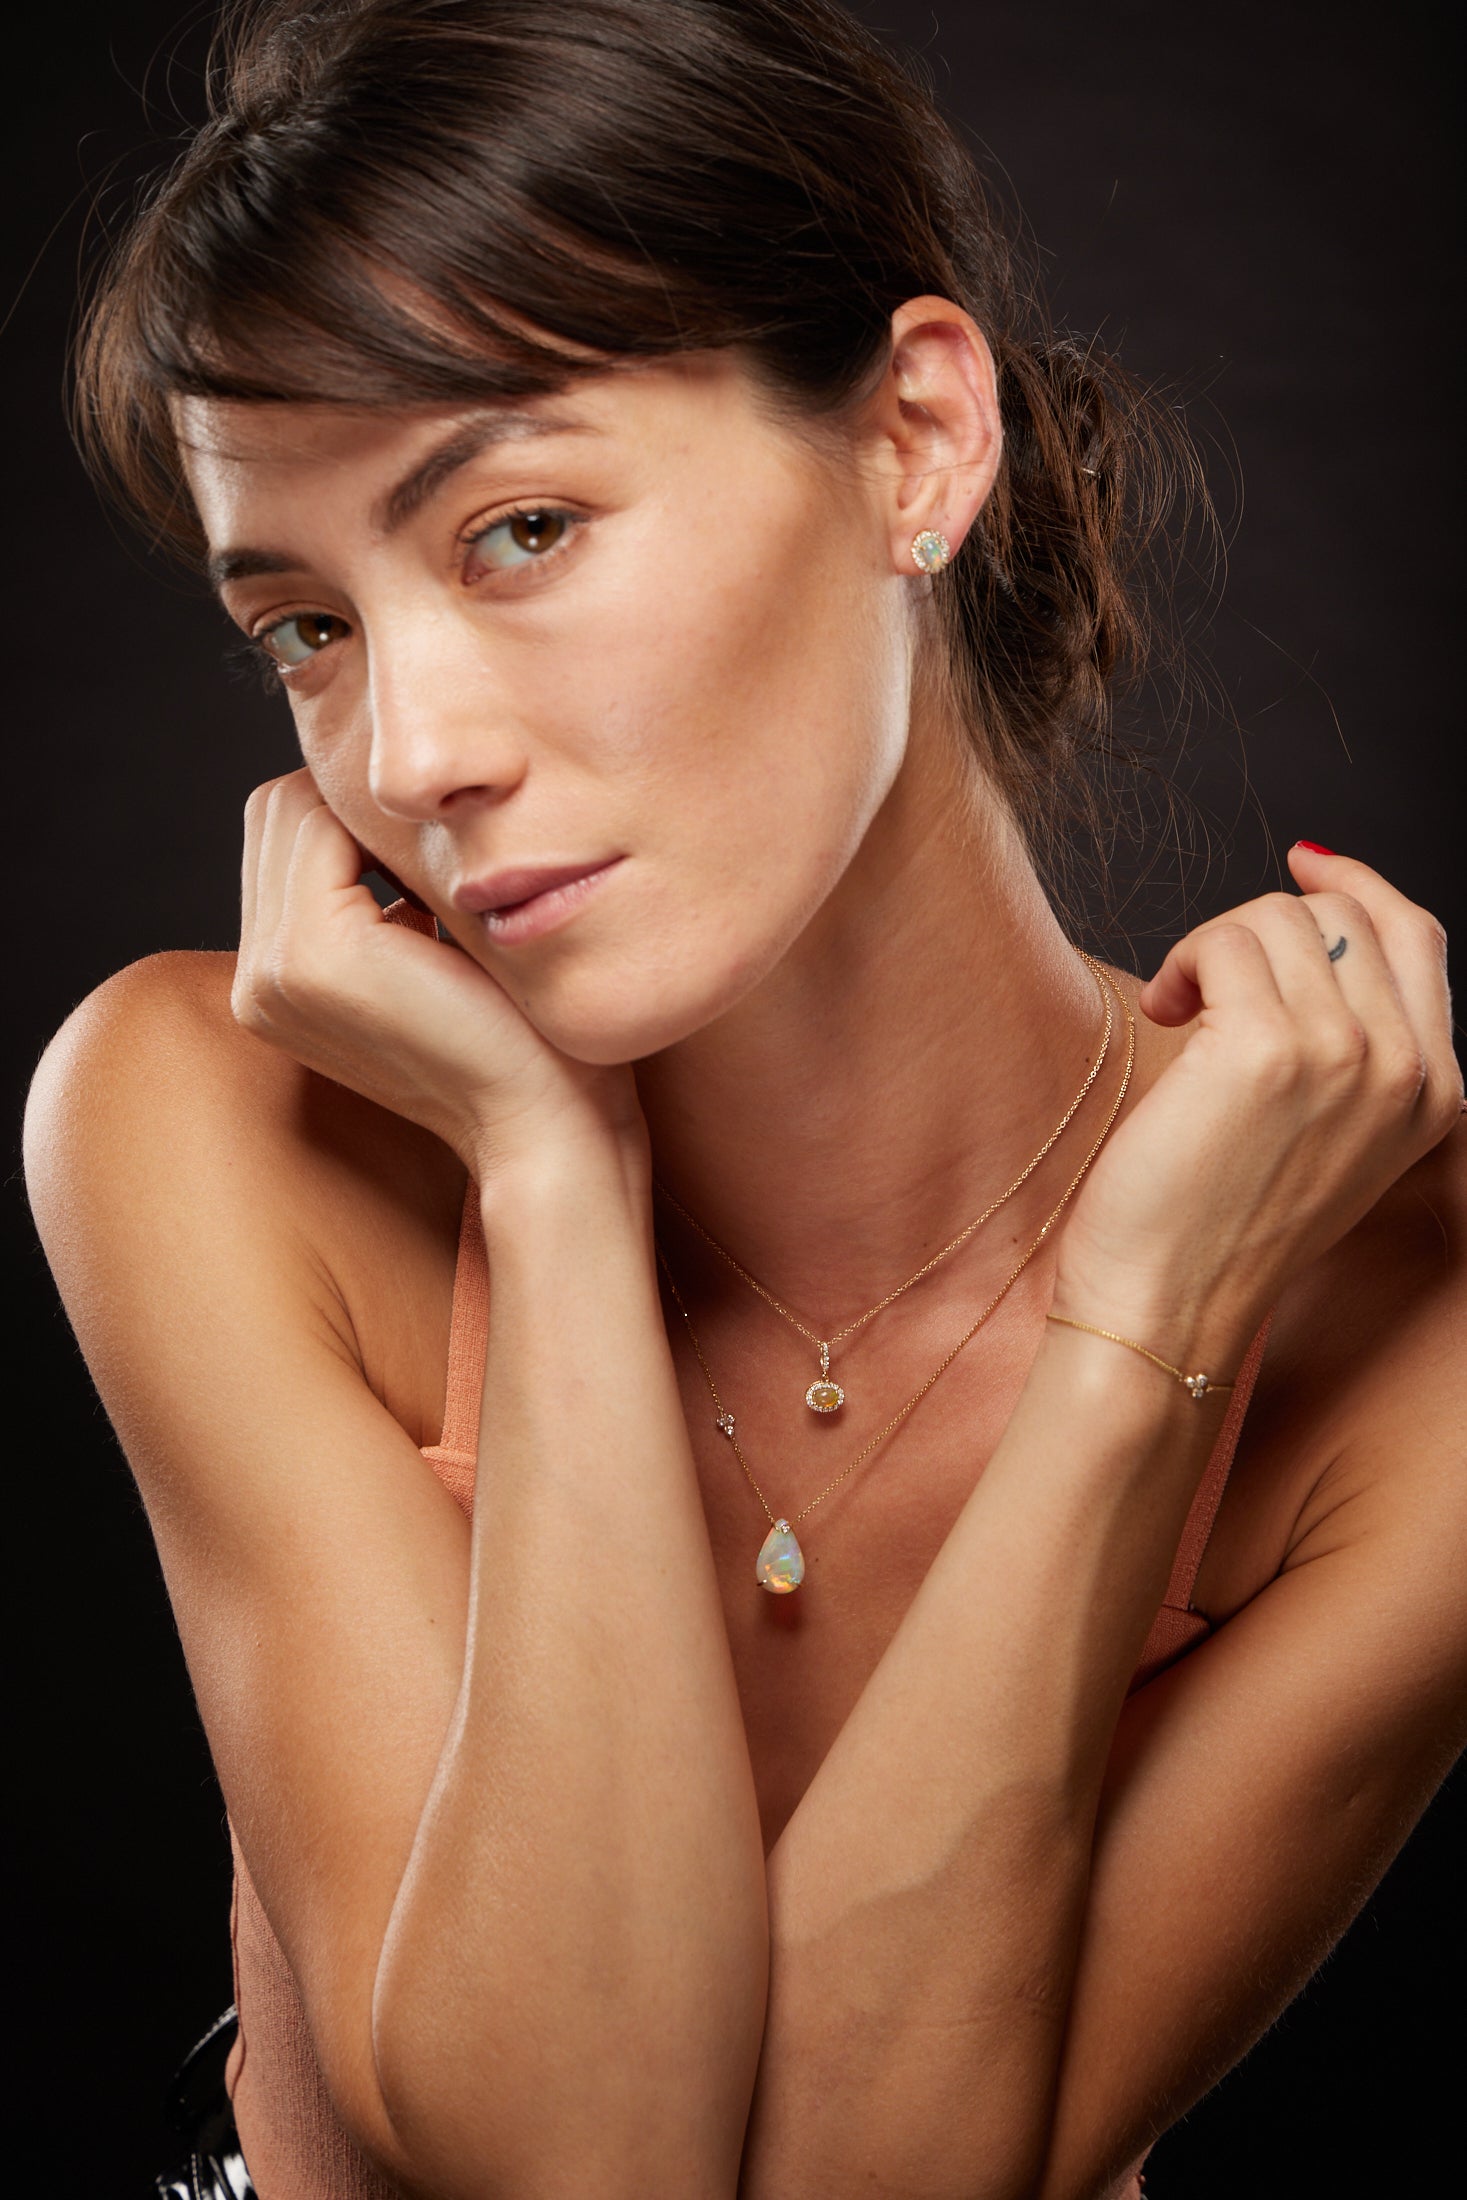 Opal Cabochon Pear Shape Necklace